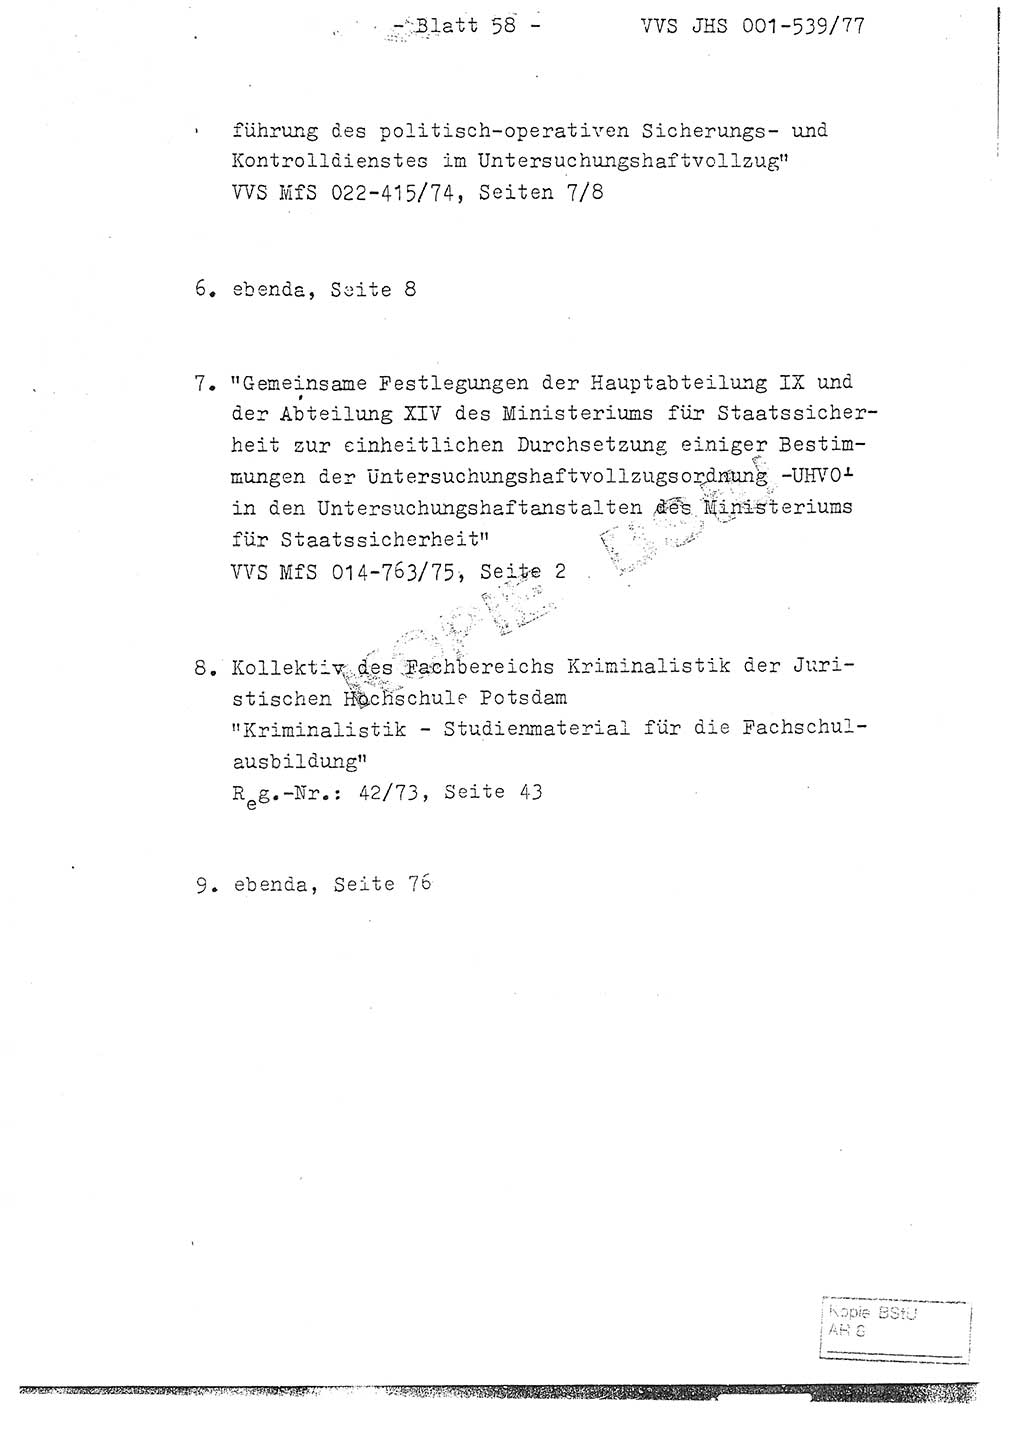 Fachschulabschlußarbeit Hauptmann Dietrich Jung (Abt. ⅩⅣ), Leutnant Klaus Klötzner (Abt. ⅩⅣ), Ministerium für Staatssicherheit (MfS) [Deutsche Demokratische Republik (DDR)], Juristische Hochschule (JHS), Vertrauliche Verschlußsache (VVS) 001-539/77, Potsdam 1978, Seite 58 (FS-Abschl.-Arb. MfS DDR JHS VVS 001-539/77 1978, S. 58)